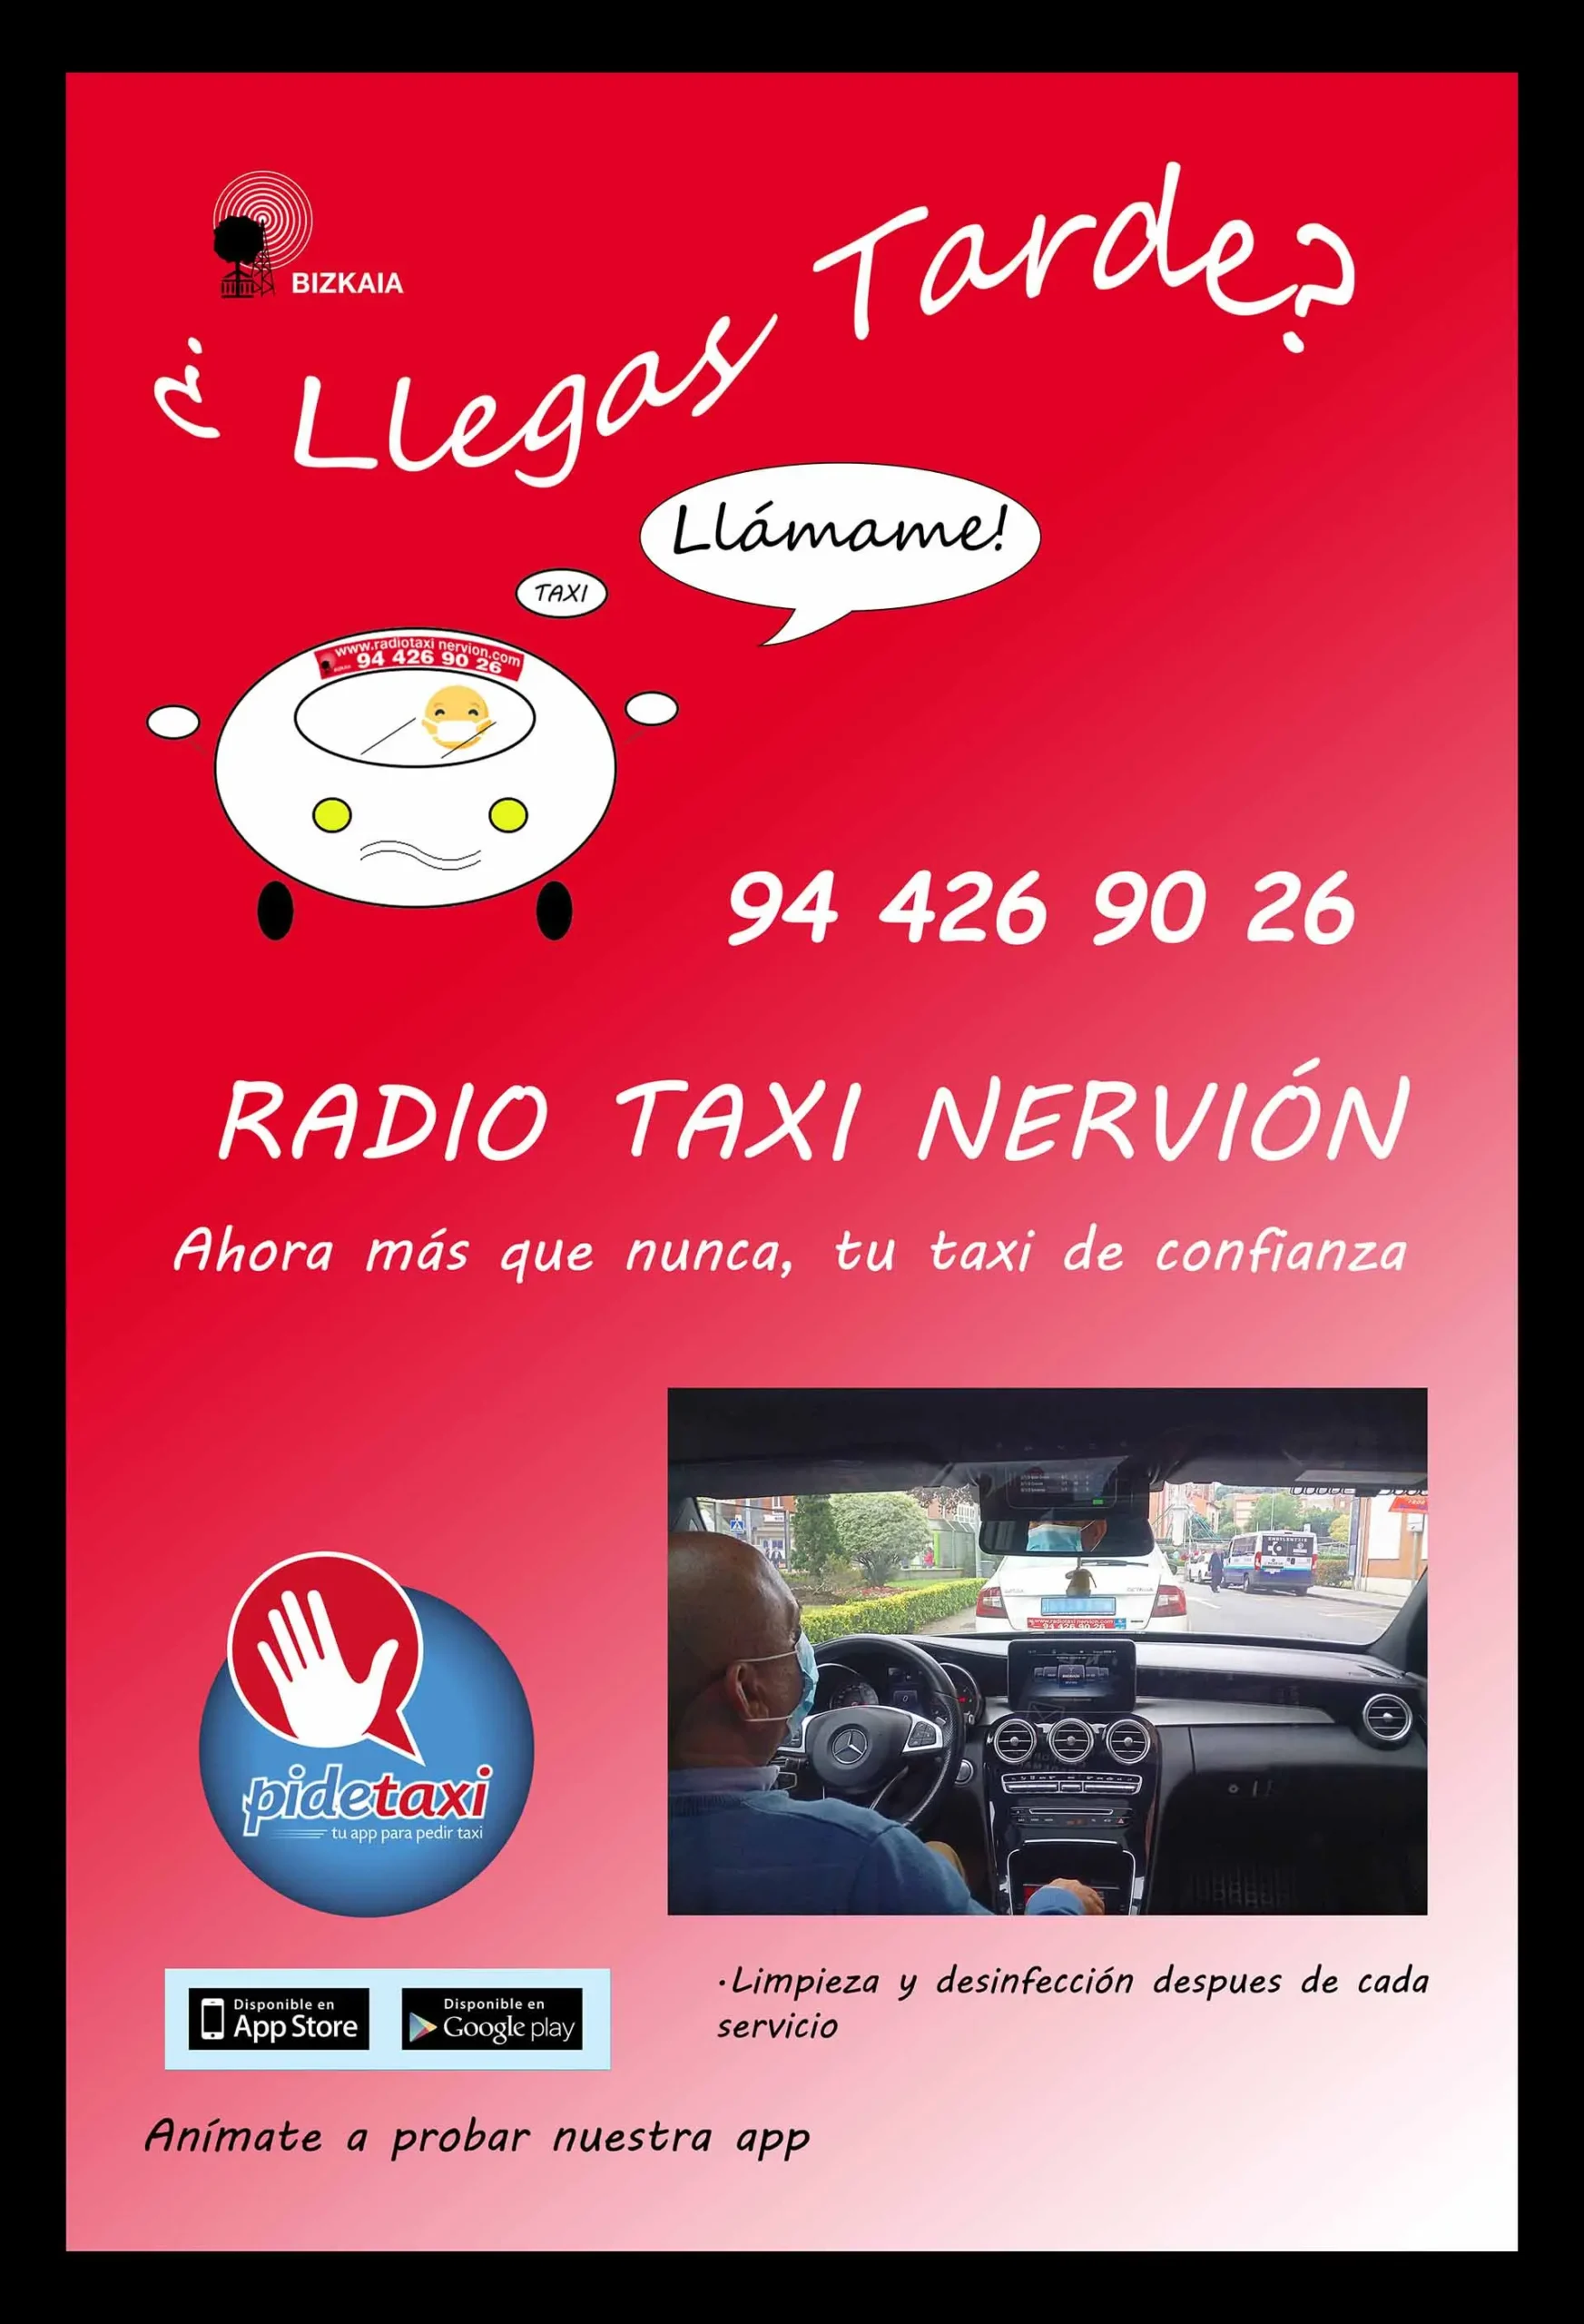 taxi portugalete teléfono - Cuánto cuesta un taxi de Getxo al aeropuerto